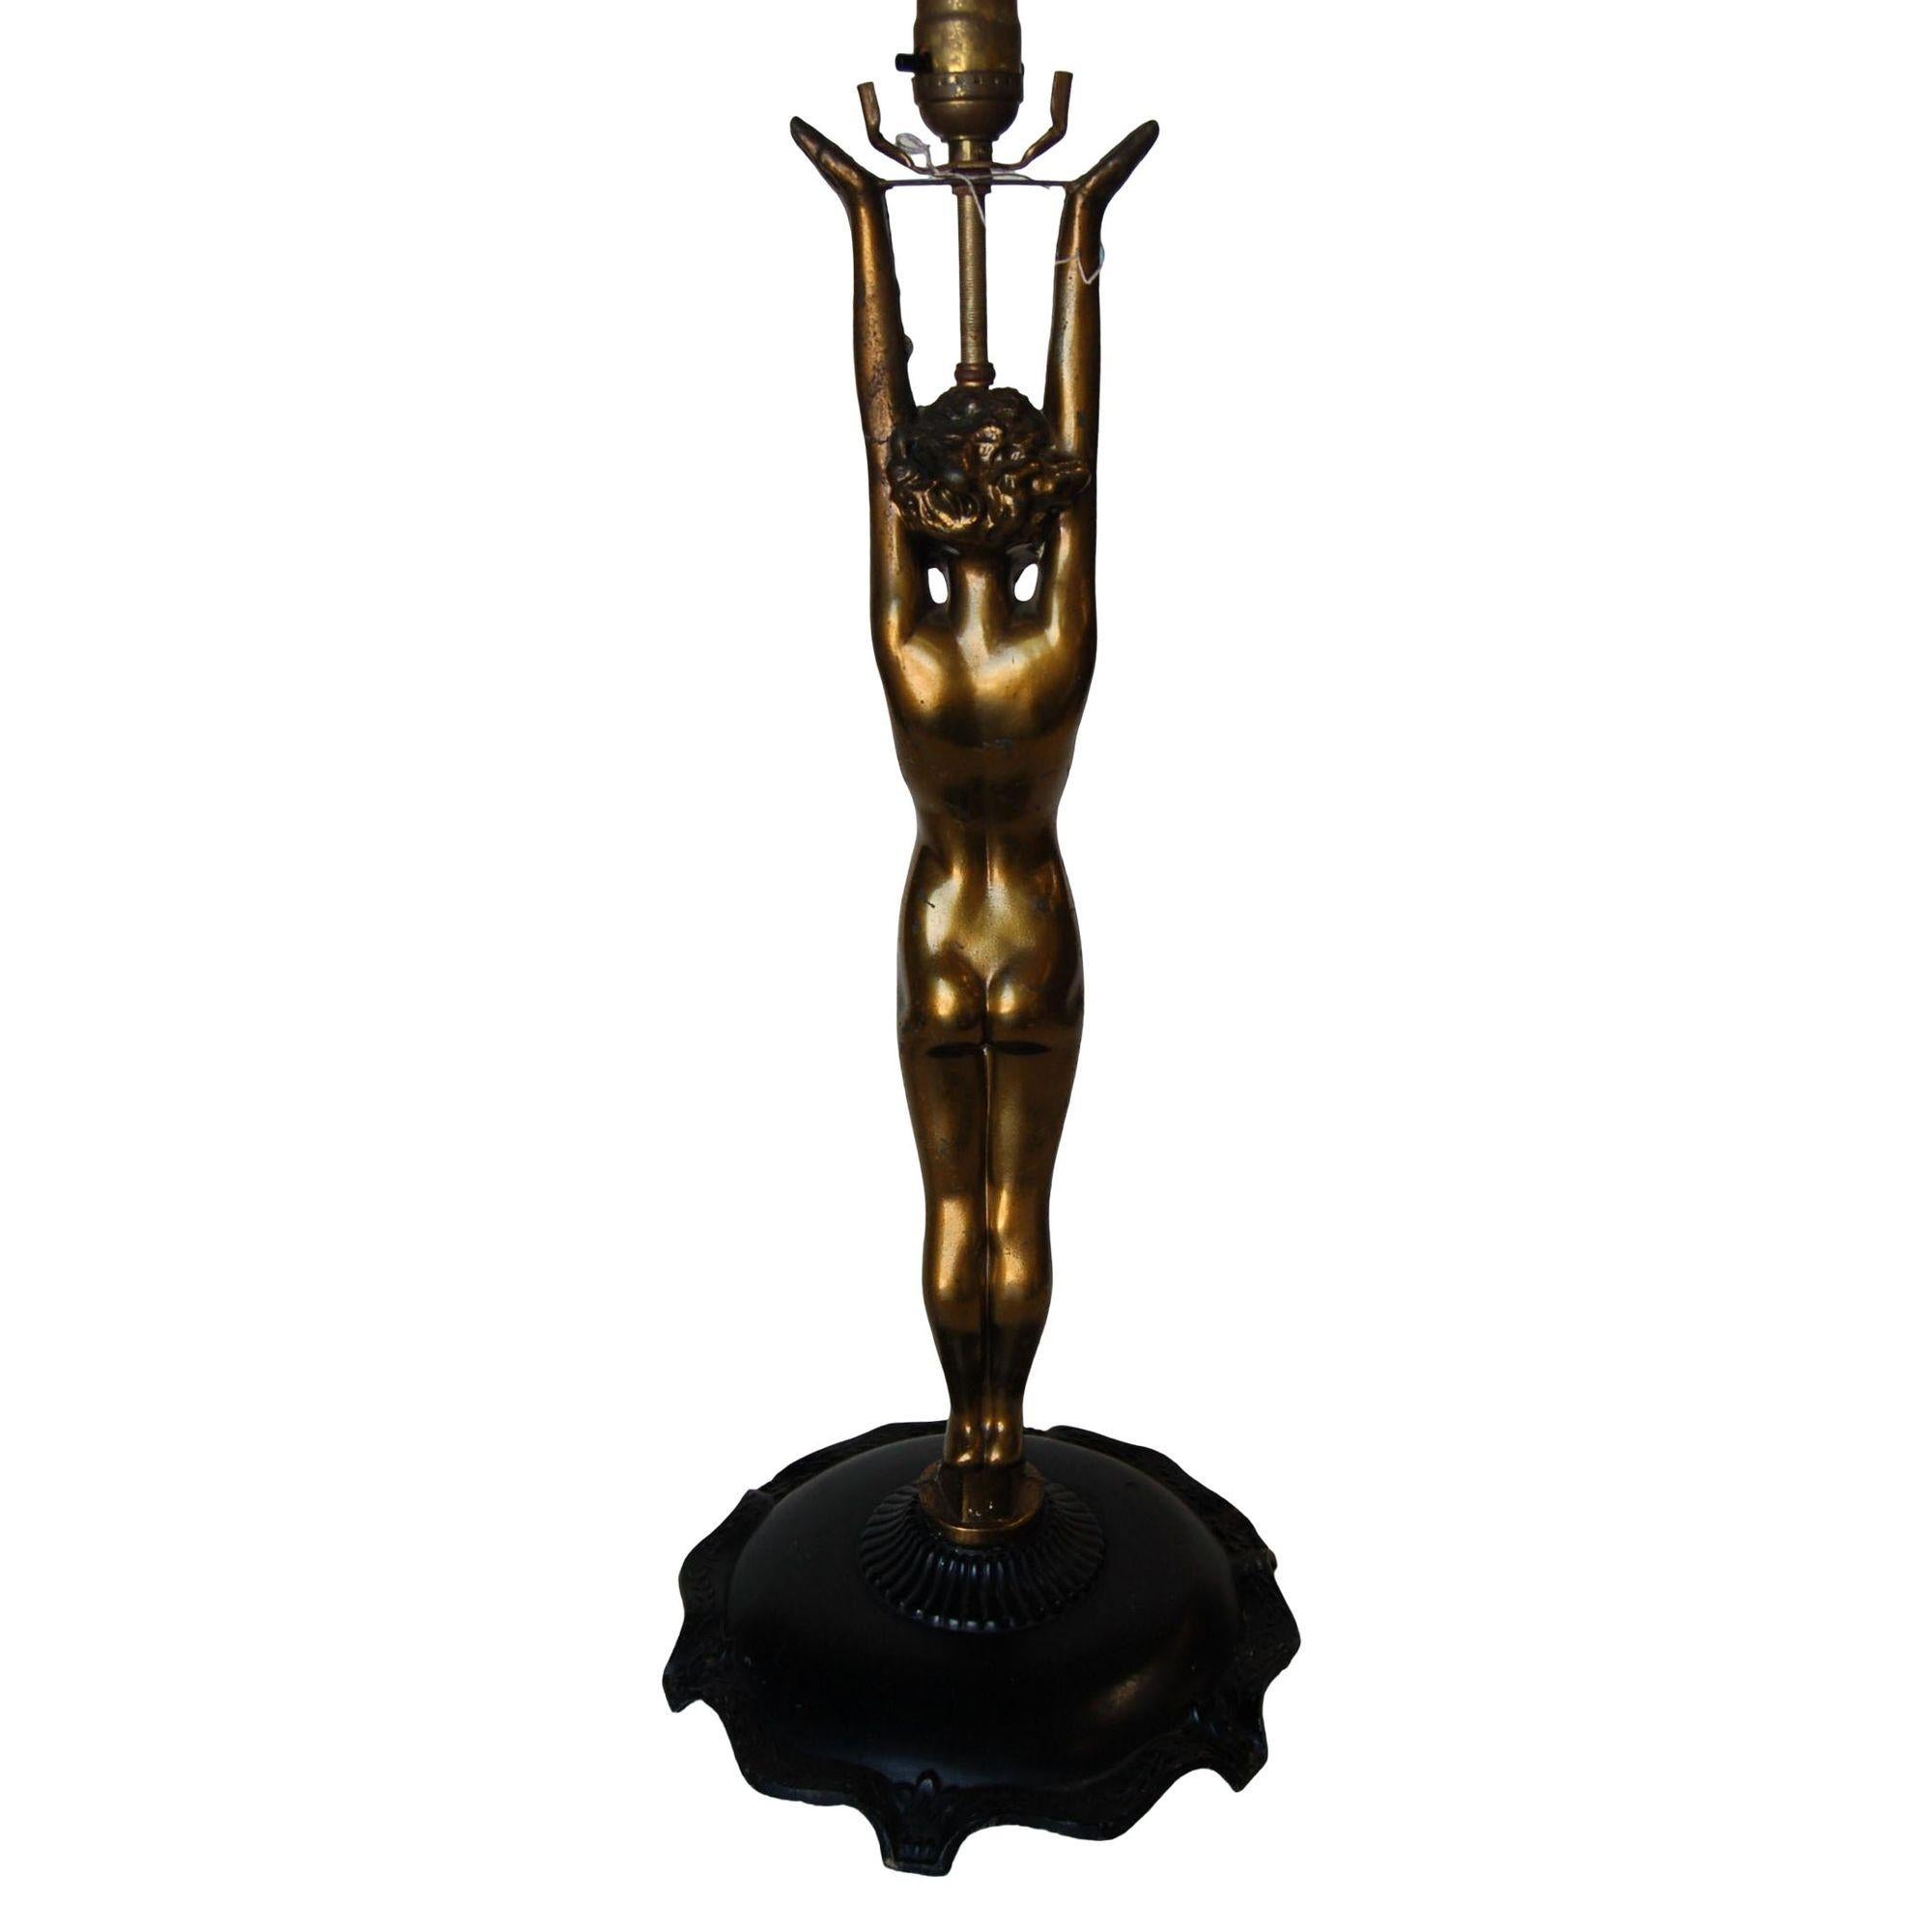 Magnifique lampe de table d'appoint Nuart en bronze avec une figure nue debout et des bras étendus sur une base en métal noir orné. 

Mesures : 11